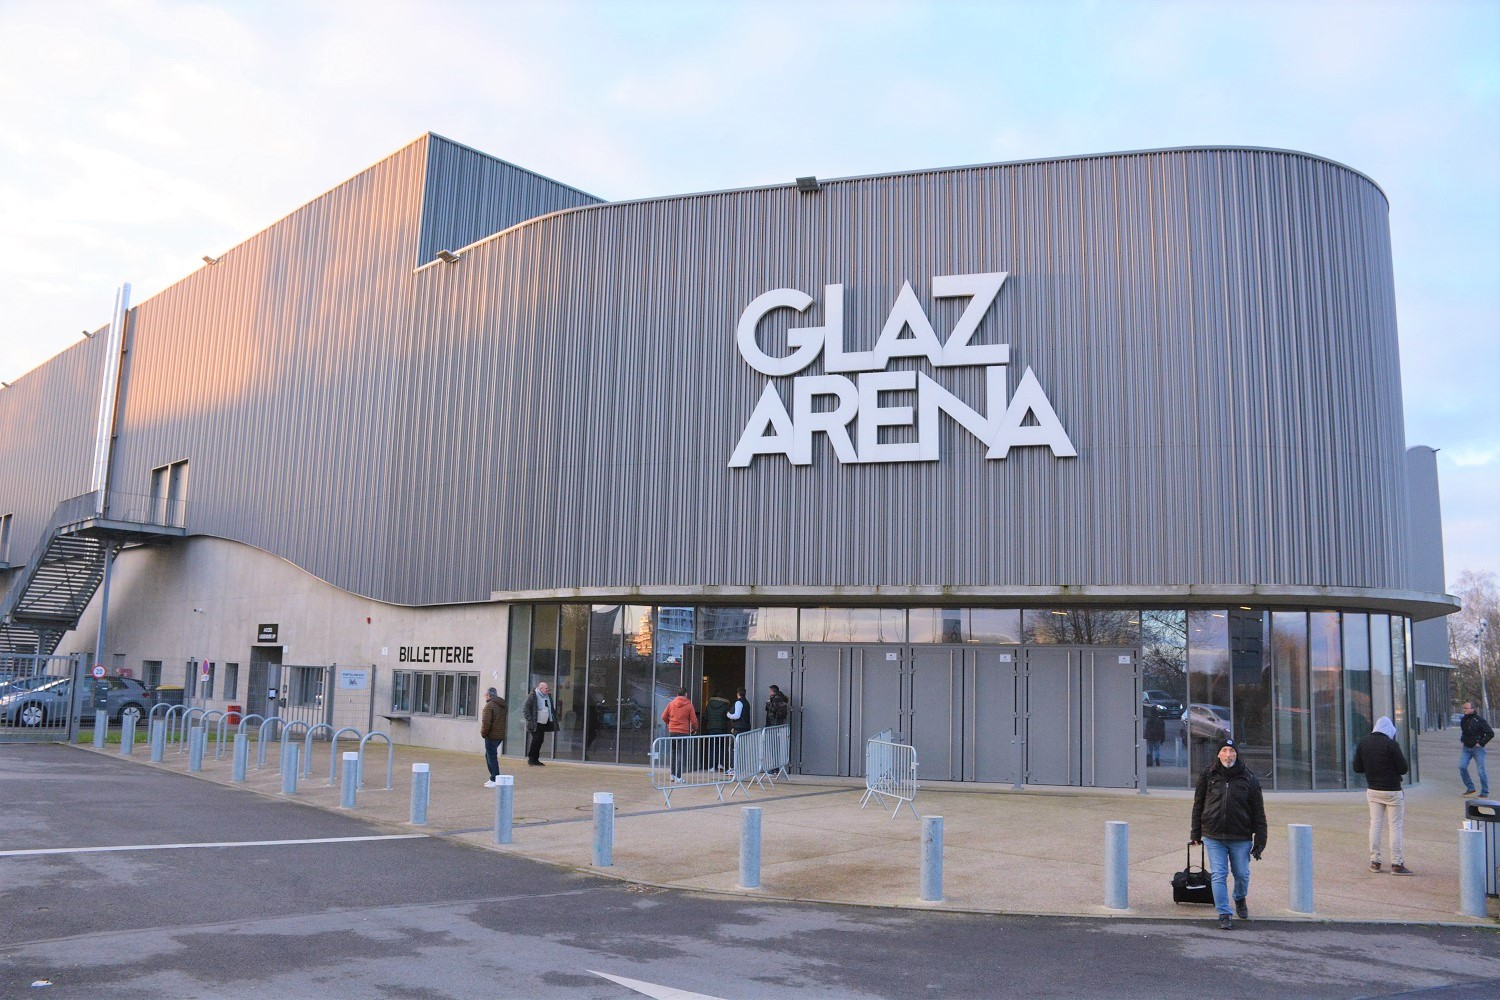 Glaz Arena